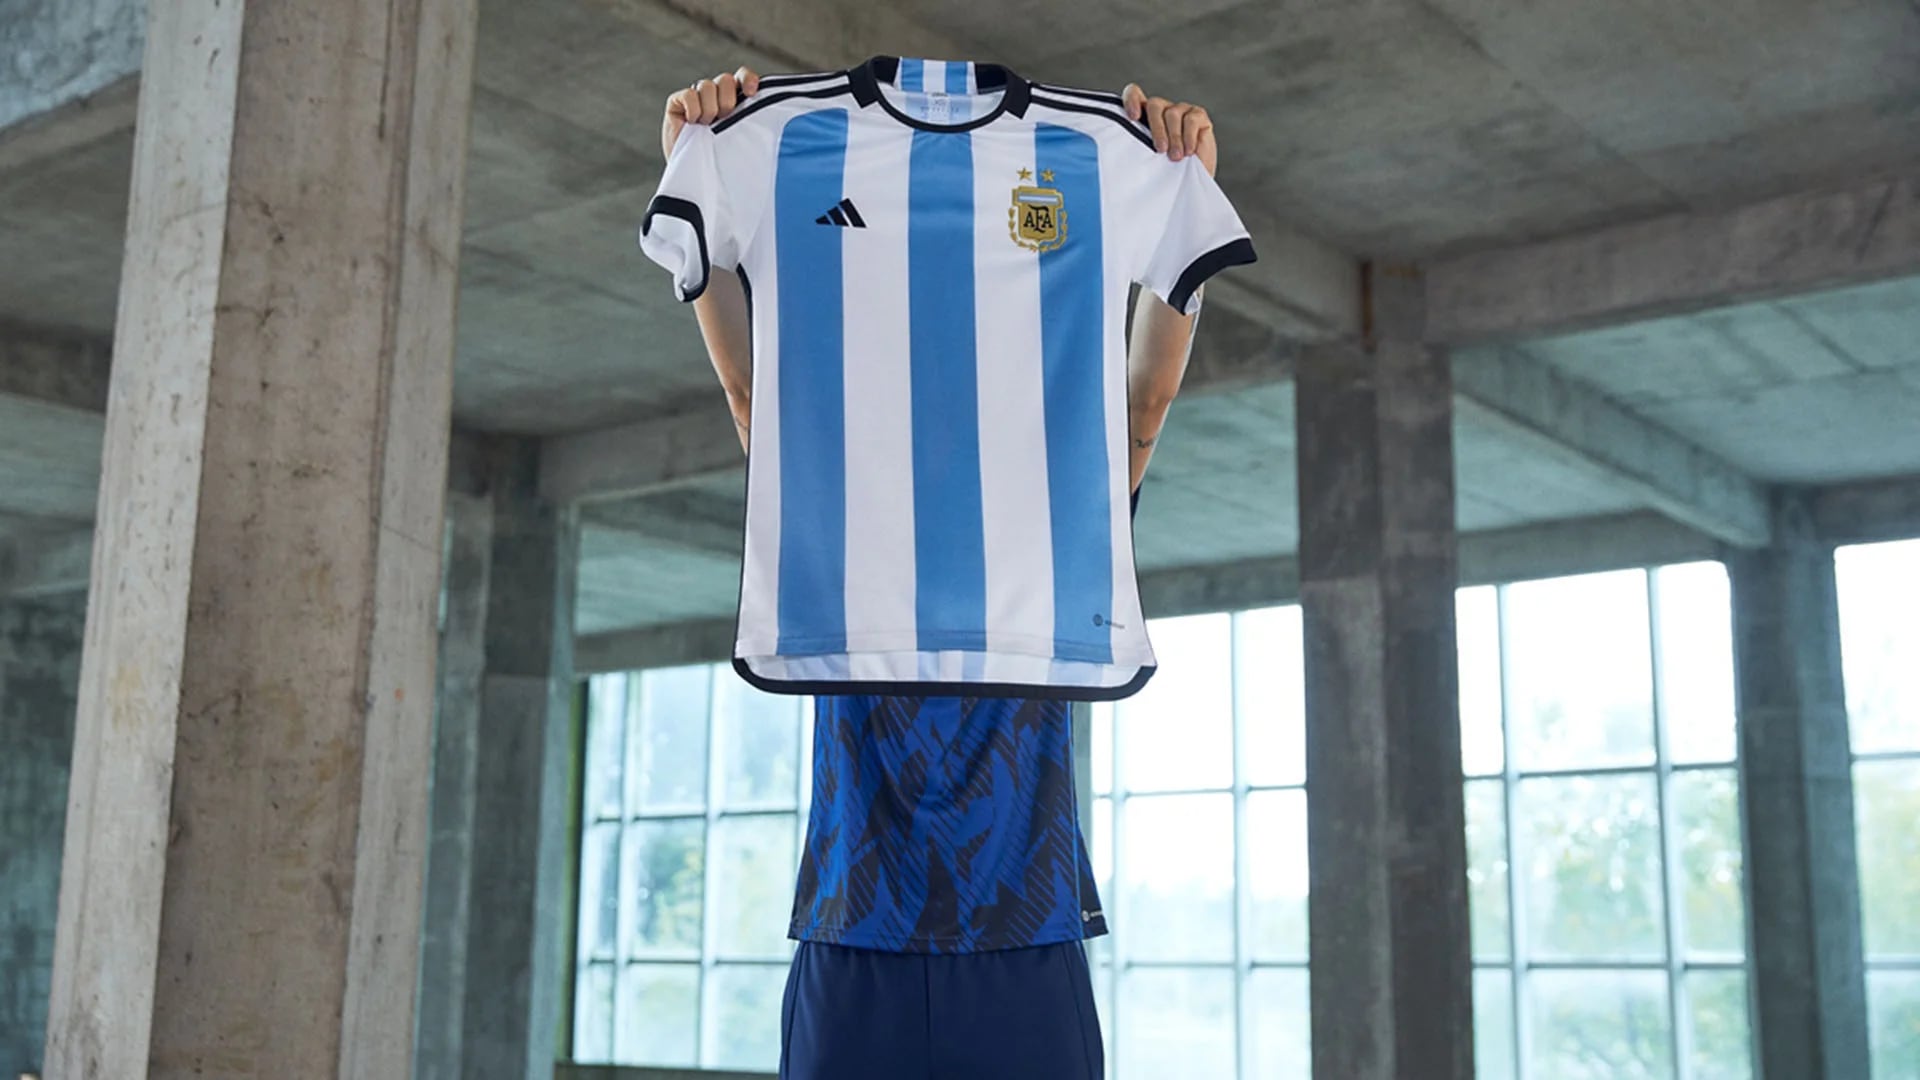 A menos de dos meses del Mundial, faltan camisetas de la Selección Argentina la demanda - Infobae